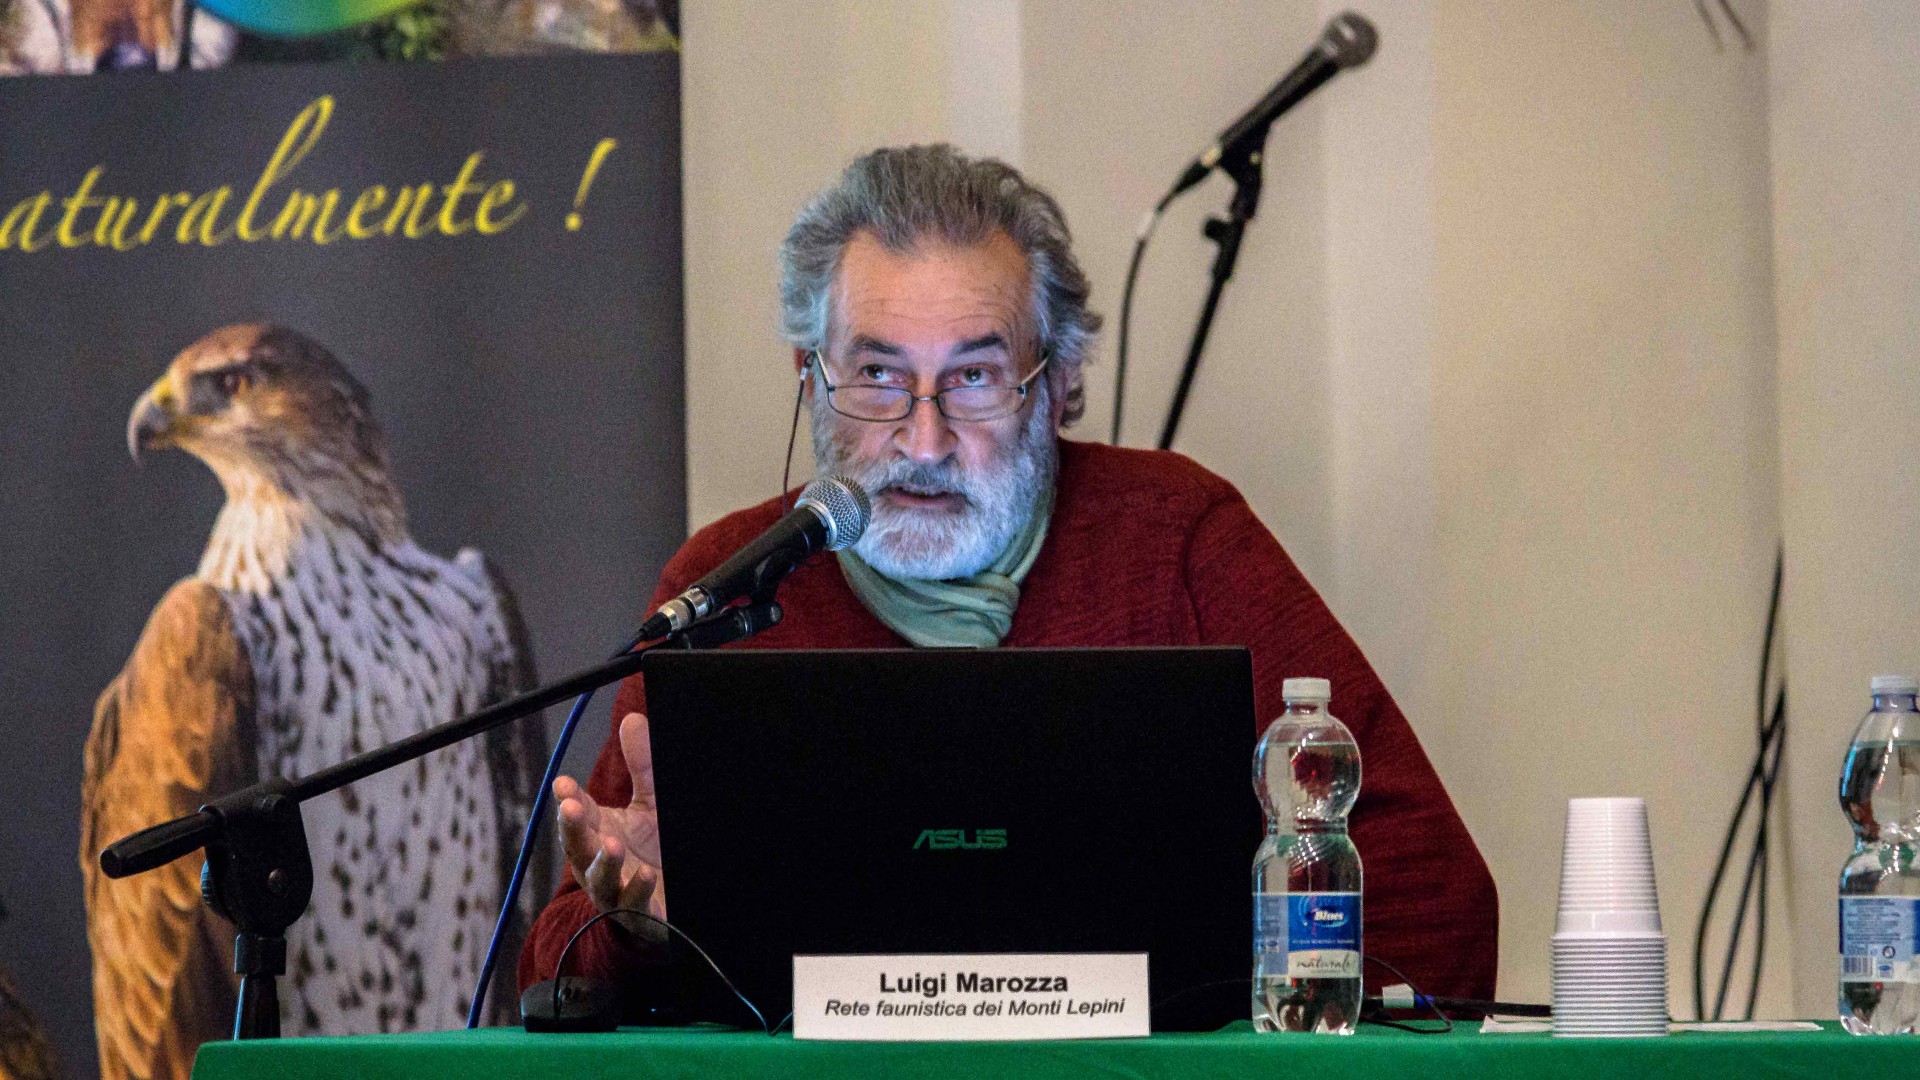 Luigi Marozza